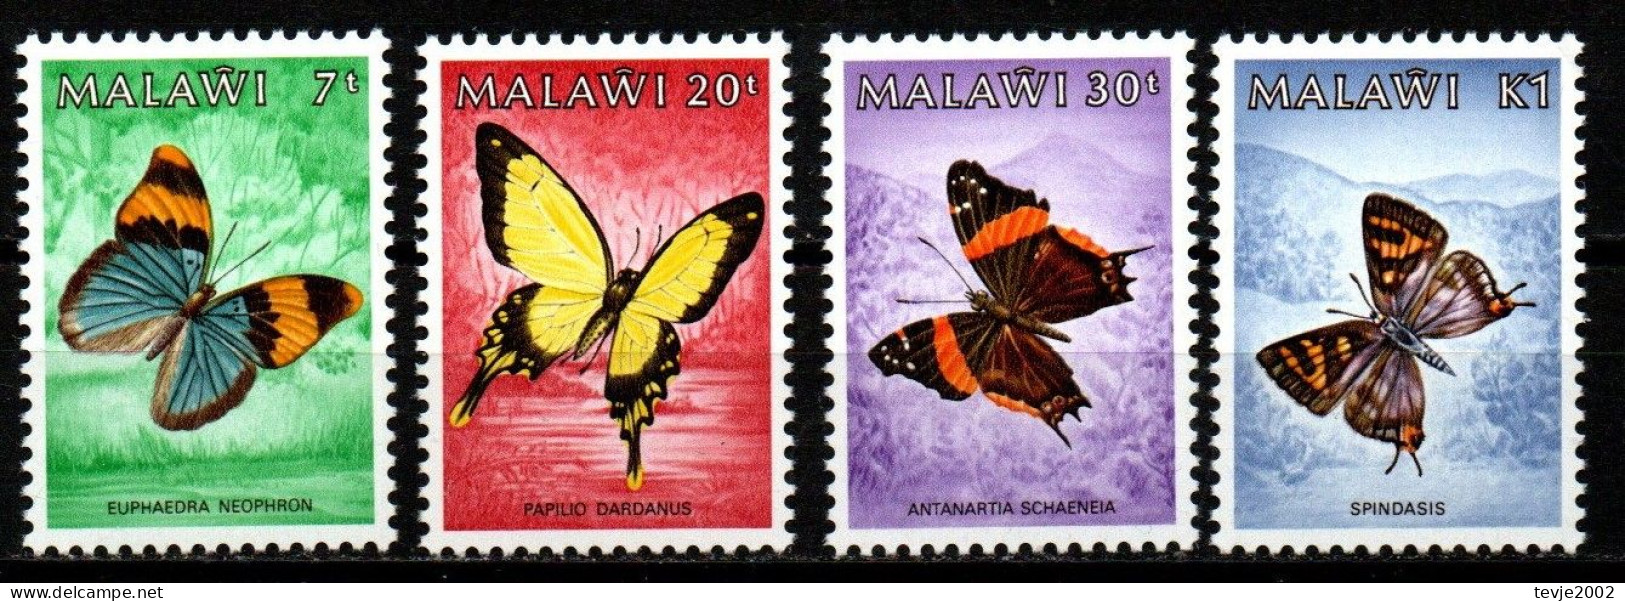 Malawi 1984 - Mi.Nr. 432 - 435 - Postfrisch MNH - Tiere Animals Schmetterlinge Butterflies - Vlinders